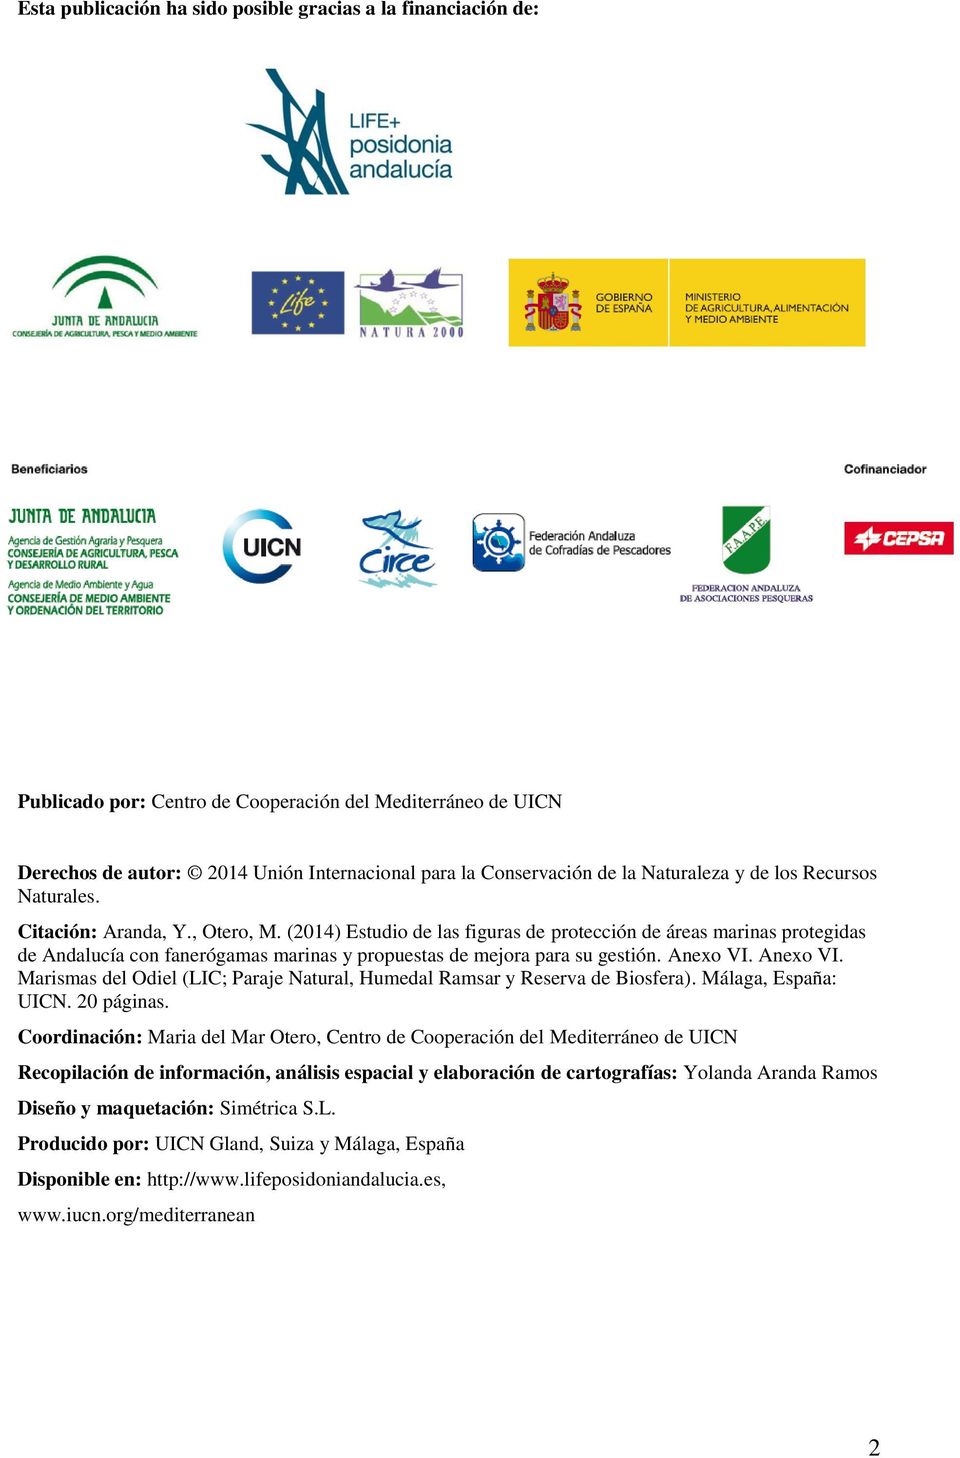 (2014) Estudio de las figuras de protección de áreas marinas protegidas de Andalucía con fanerógamas marinas y propuestas de mejora para su gestión. Anexo VI.